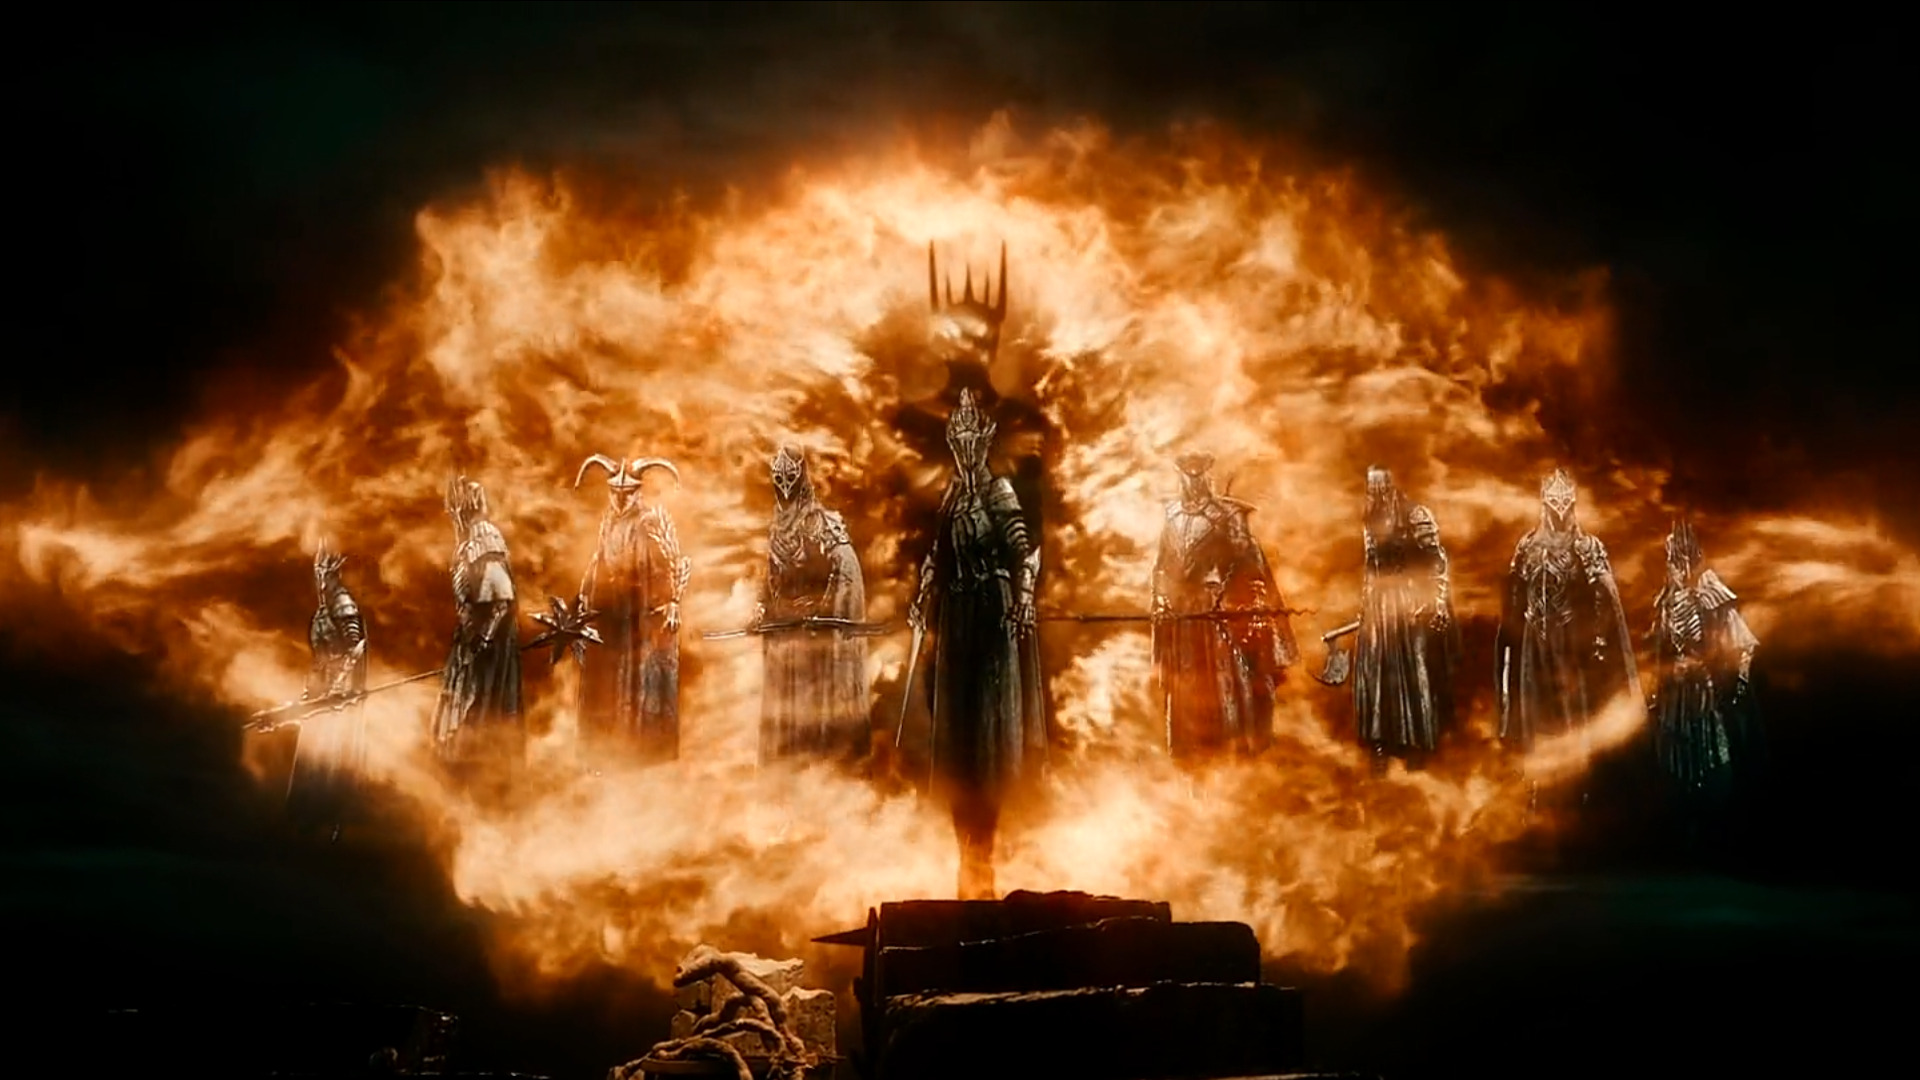 Rings of power sauron. Хоббит битва пяти воинств Саурон. Назгулы Мордор Саурон. Саурон в Хоббите. Битва Саурона и Галадриэль.